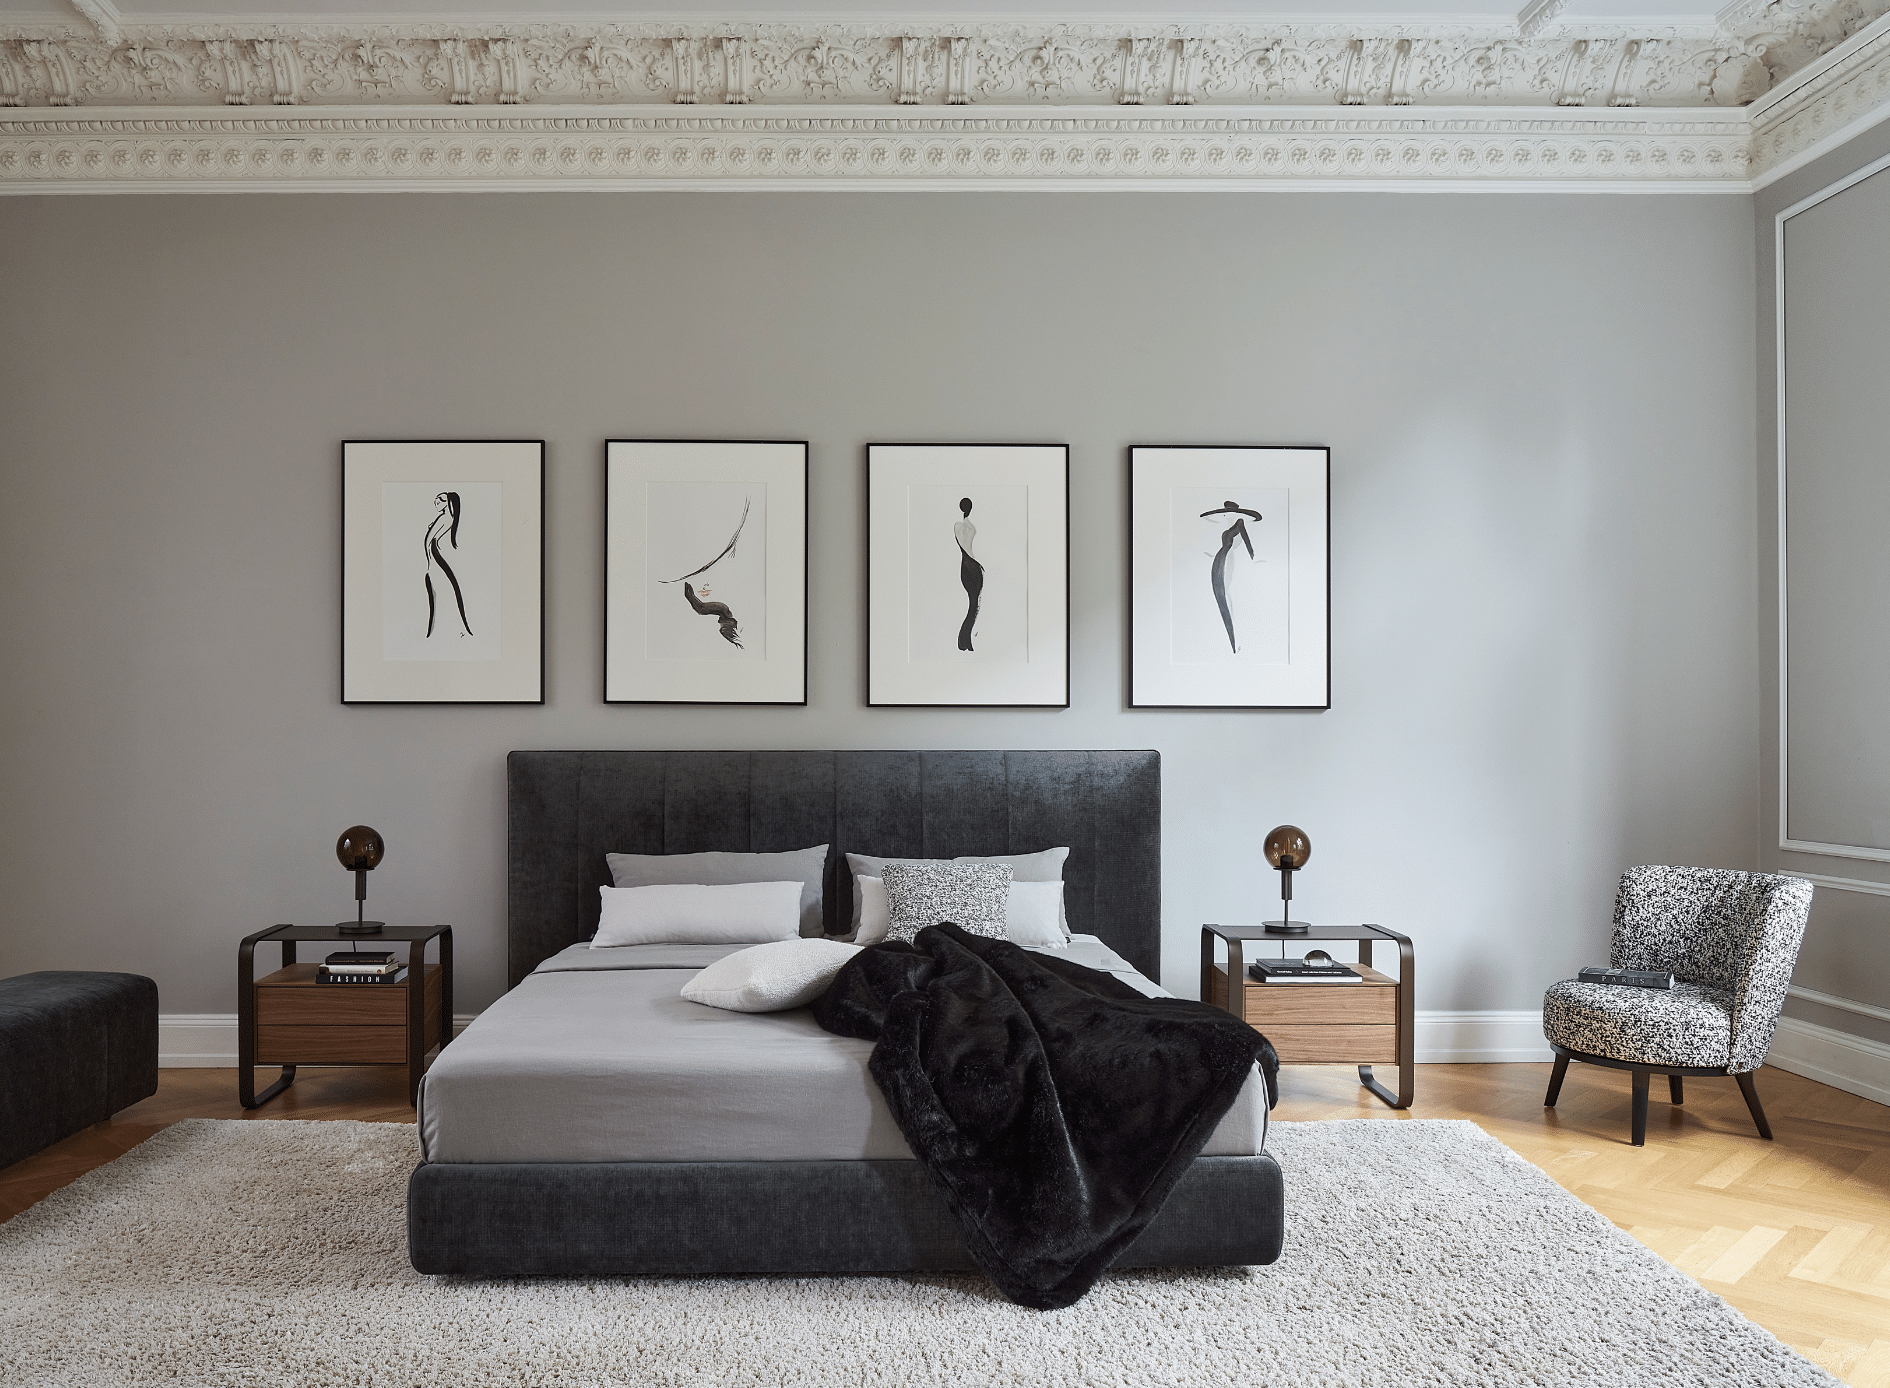 WOHNHAUS Grill & Ronacher zeigt ein Schlafzimmer in Grautönen und Stuck mit einem schwarzen Doppelbett und freiliegendem Teppich von Bielefelder Werkstätten.